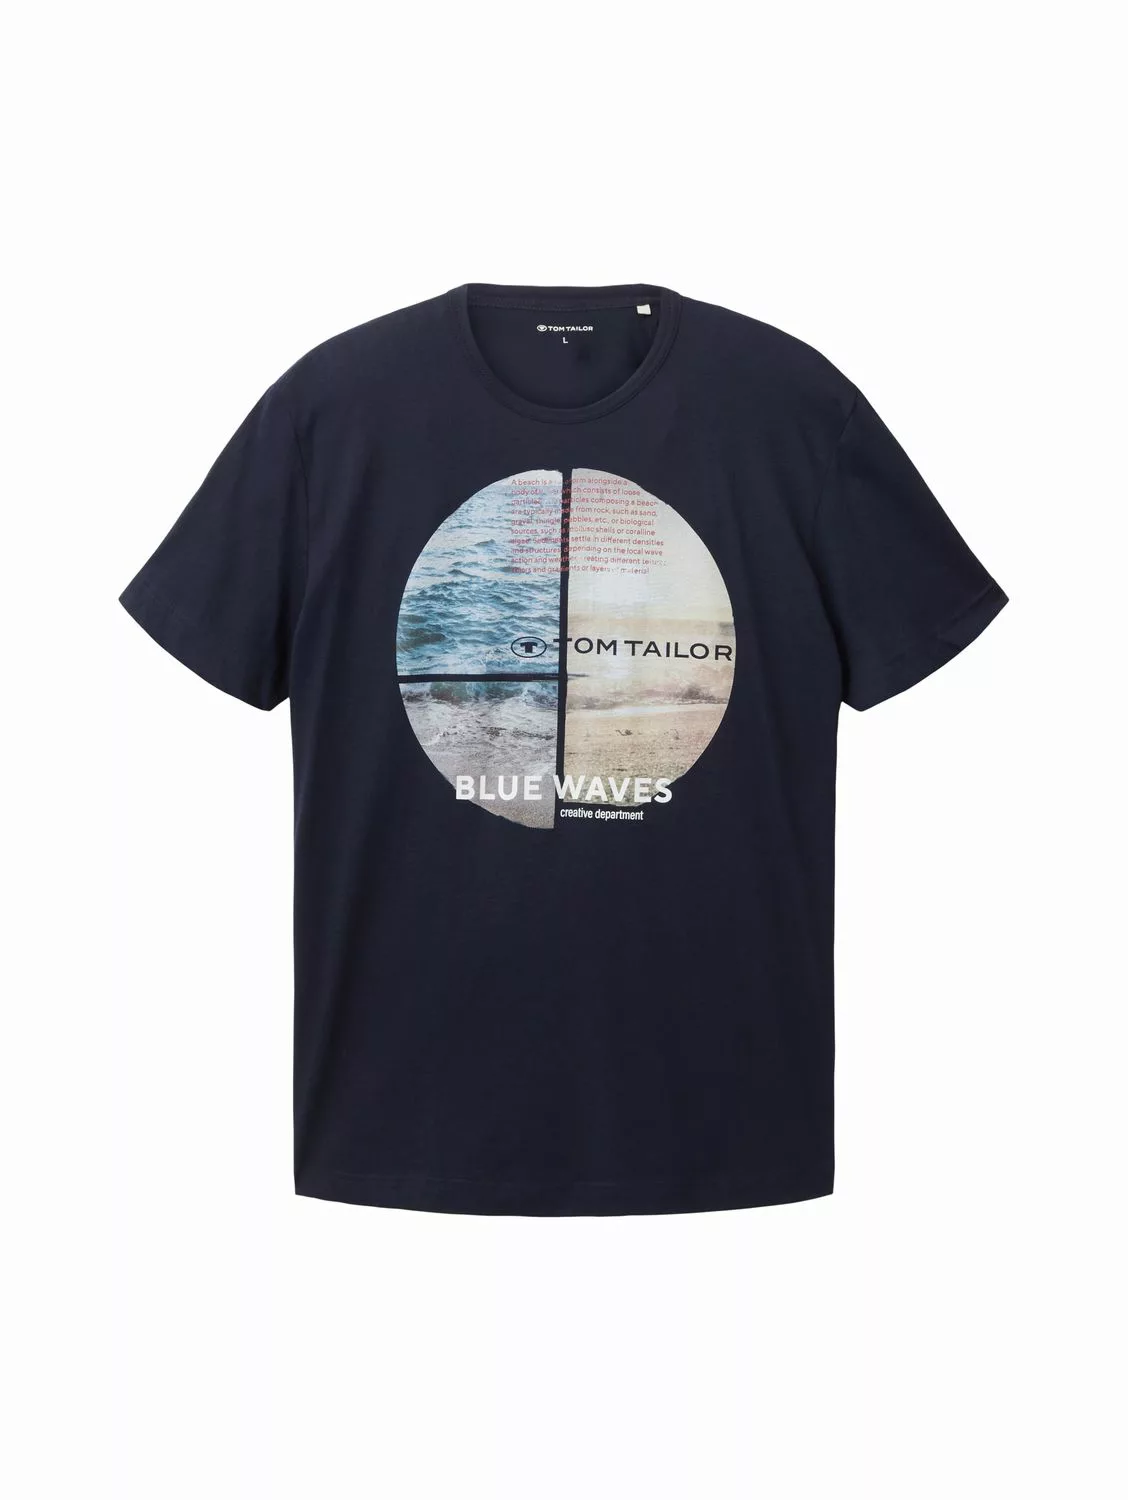 Tom Tailor Herren T-Shirt BLUE WAVES - Regular Fit günstig online kaufen